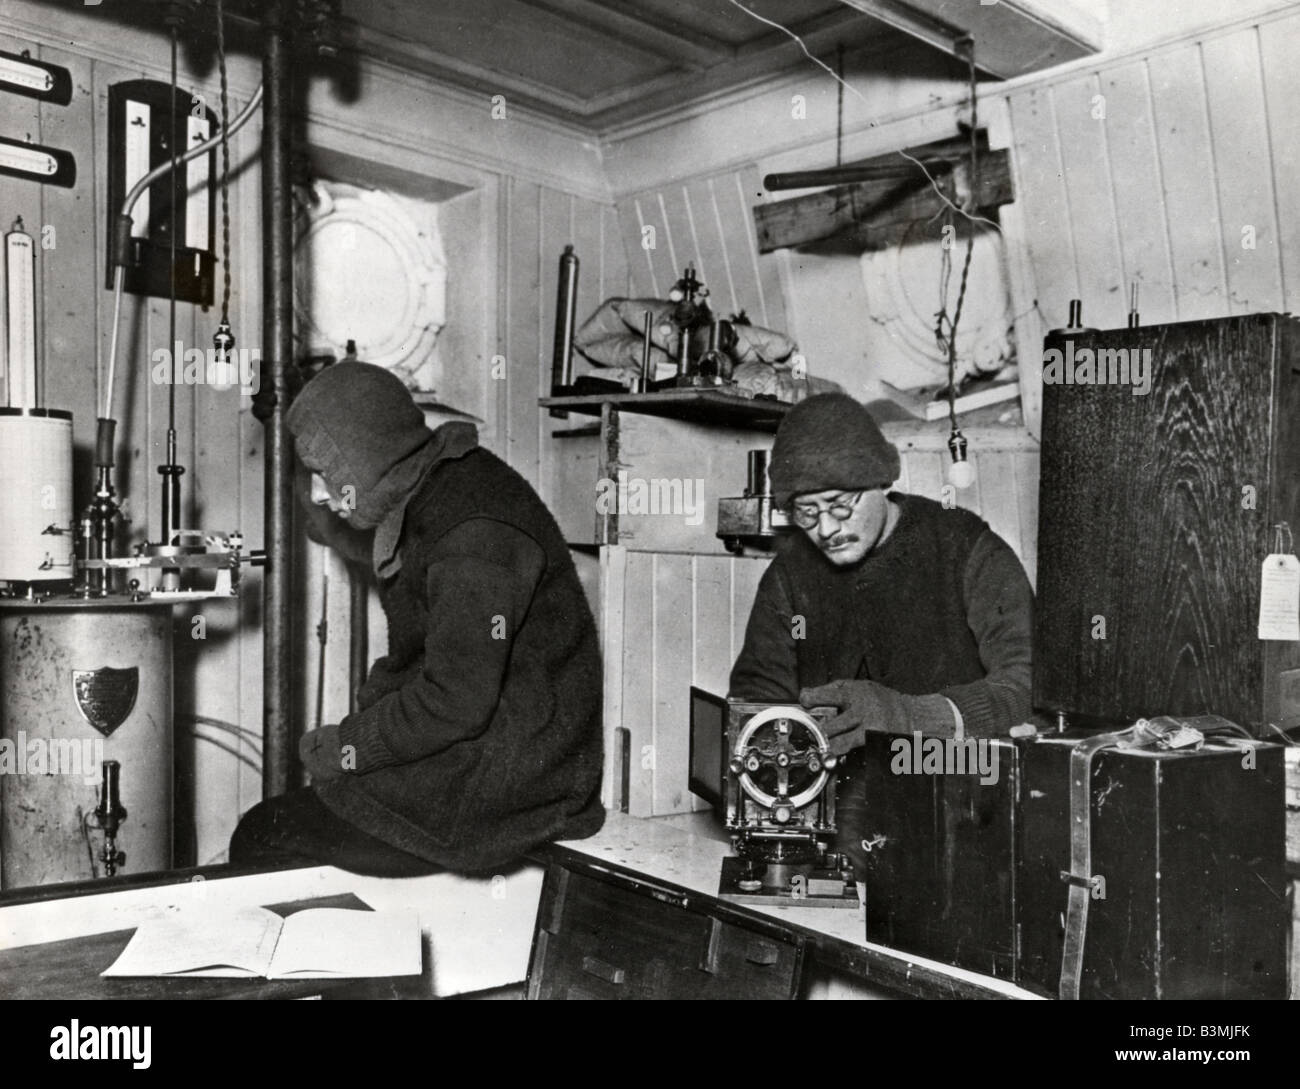 SIR Ernest Shackleton 1914 spedizione in Antartide: all'interno del laboratorio Rockery. Foto Frank Hurley - vedere la descrizione riportata di seguito Foto Stock